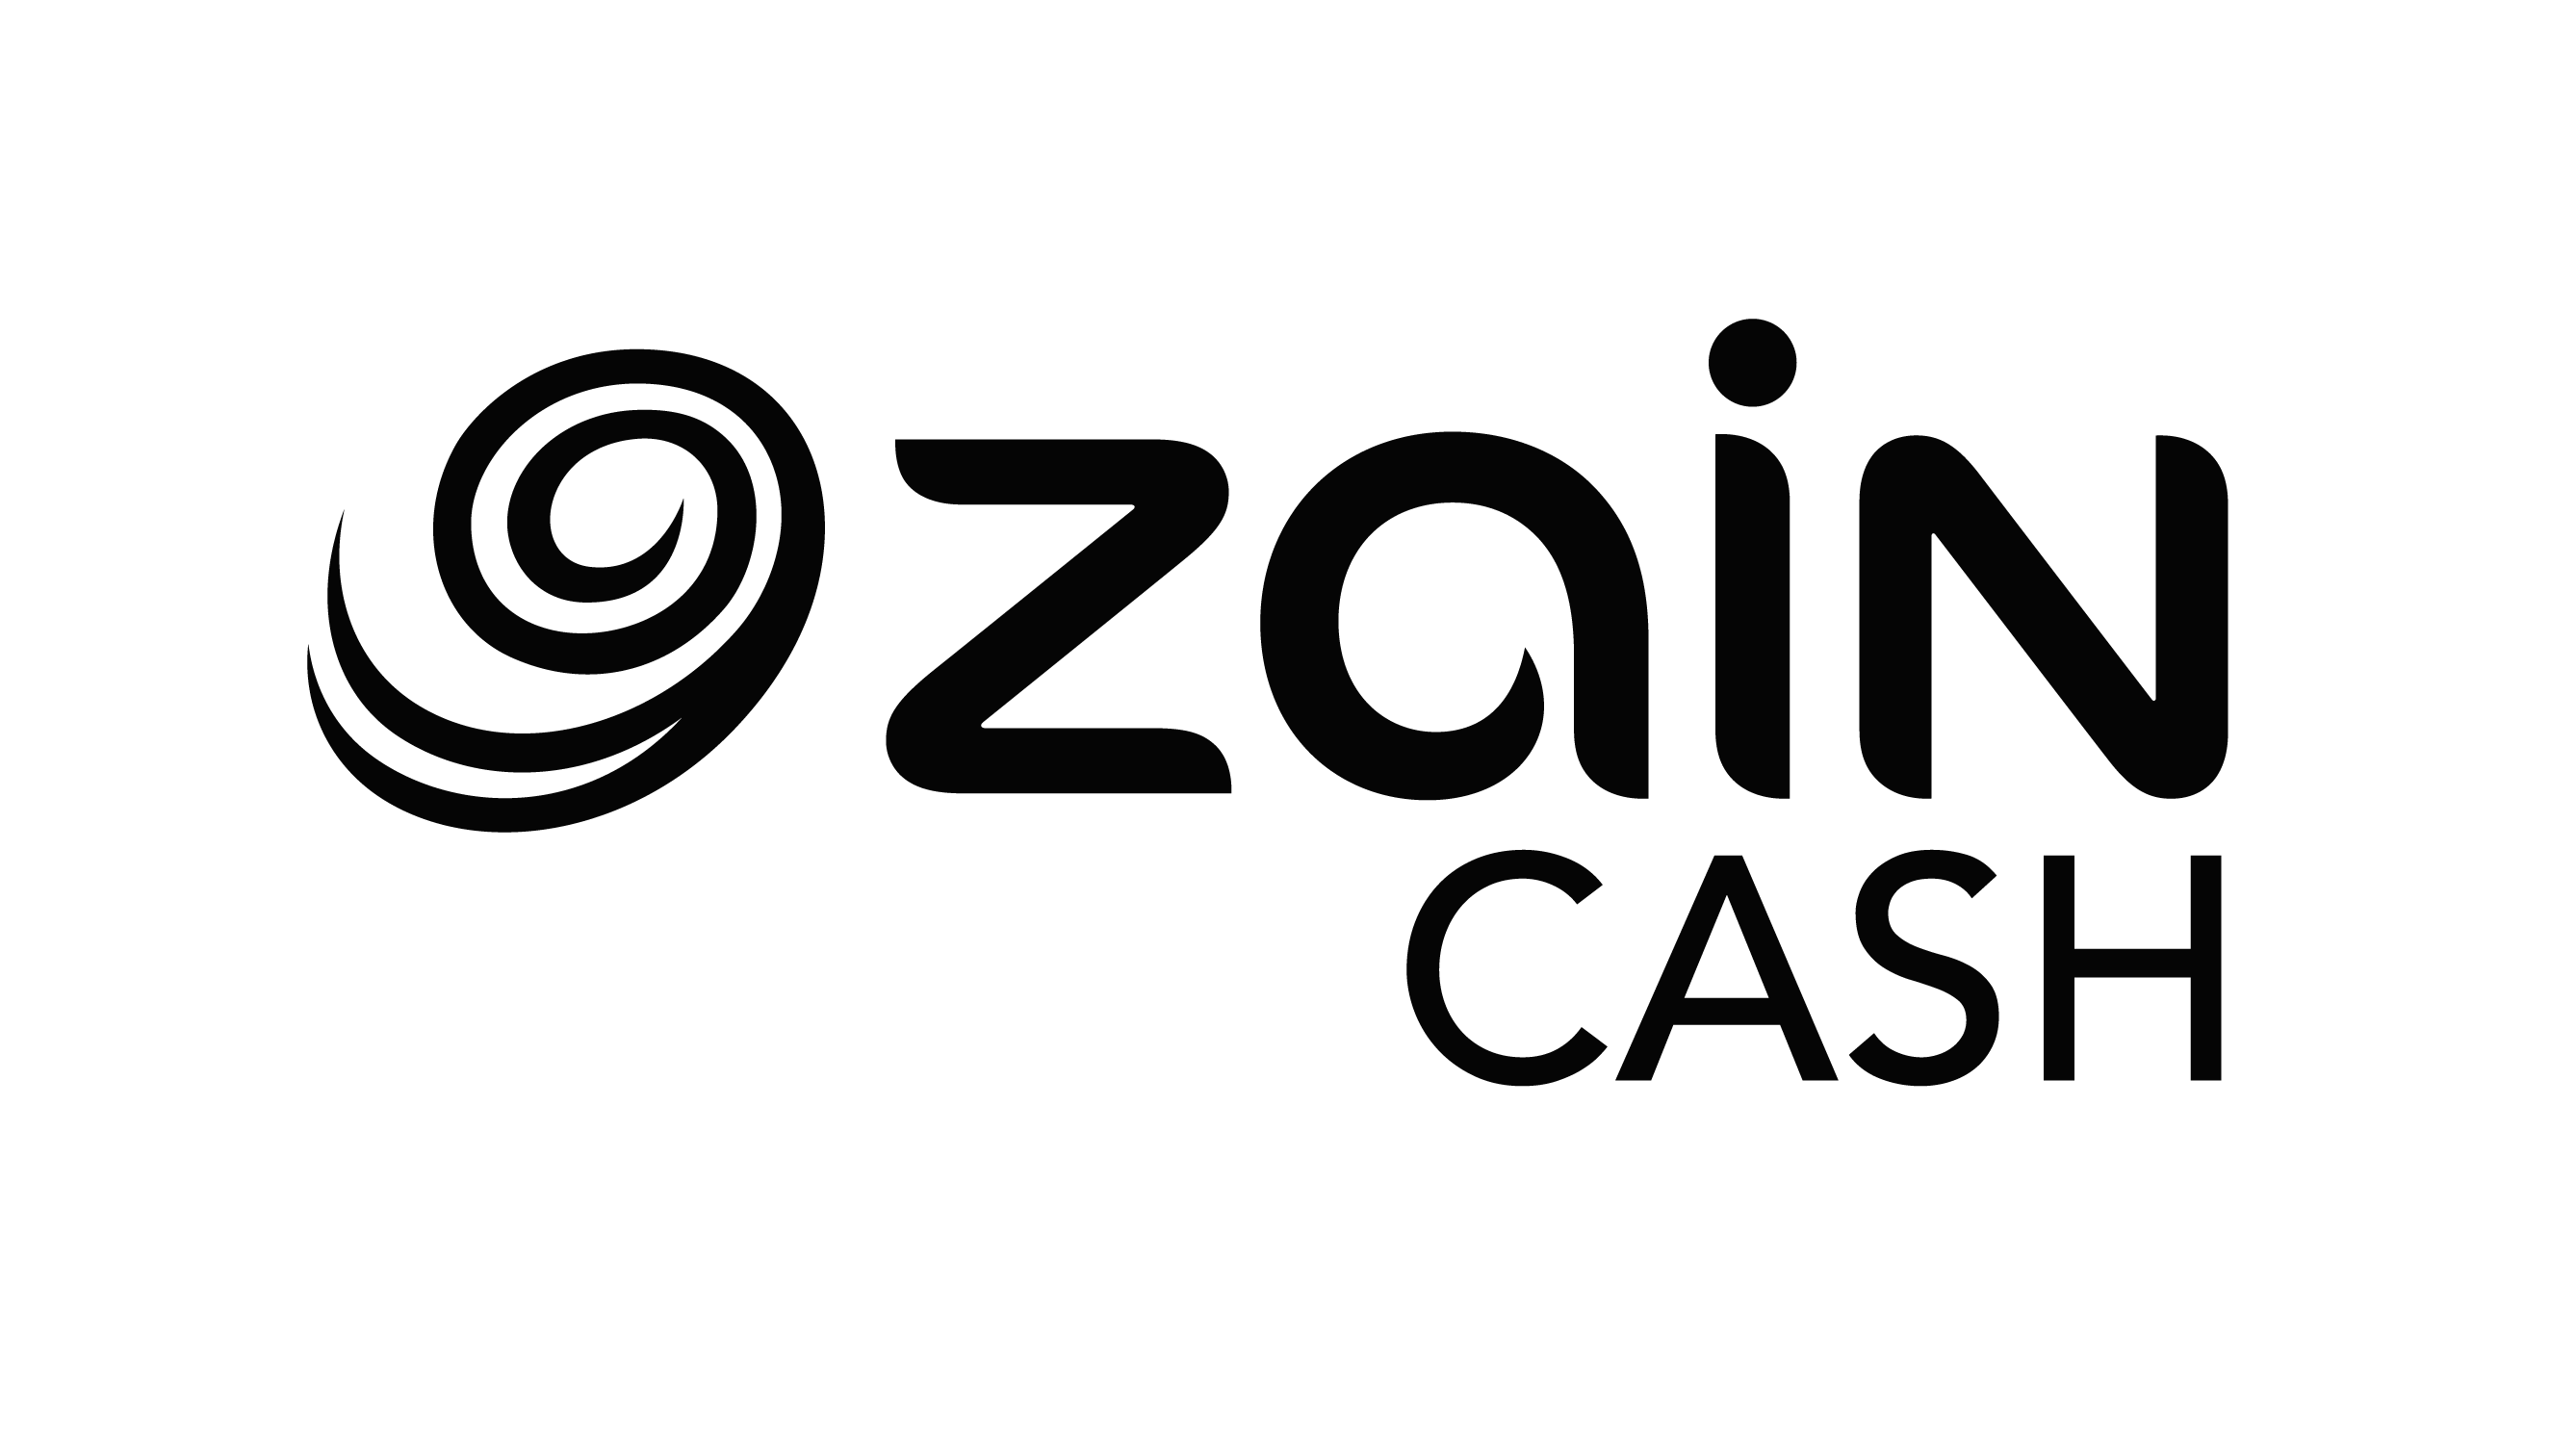 زين كاش تُطلق فيديوهات بلغة الإشارة لتسهيل وصول الأشخاص ذوي الإعاقة السمعية إلى خدماتها المالية الرقمية